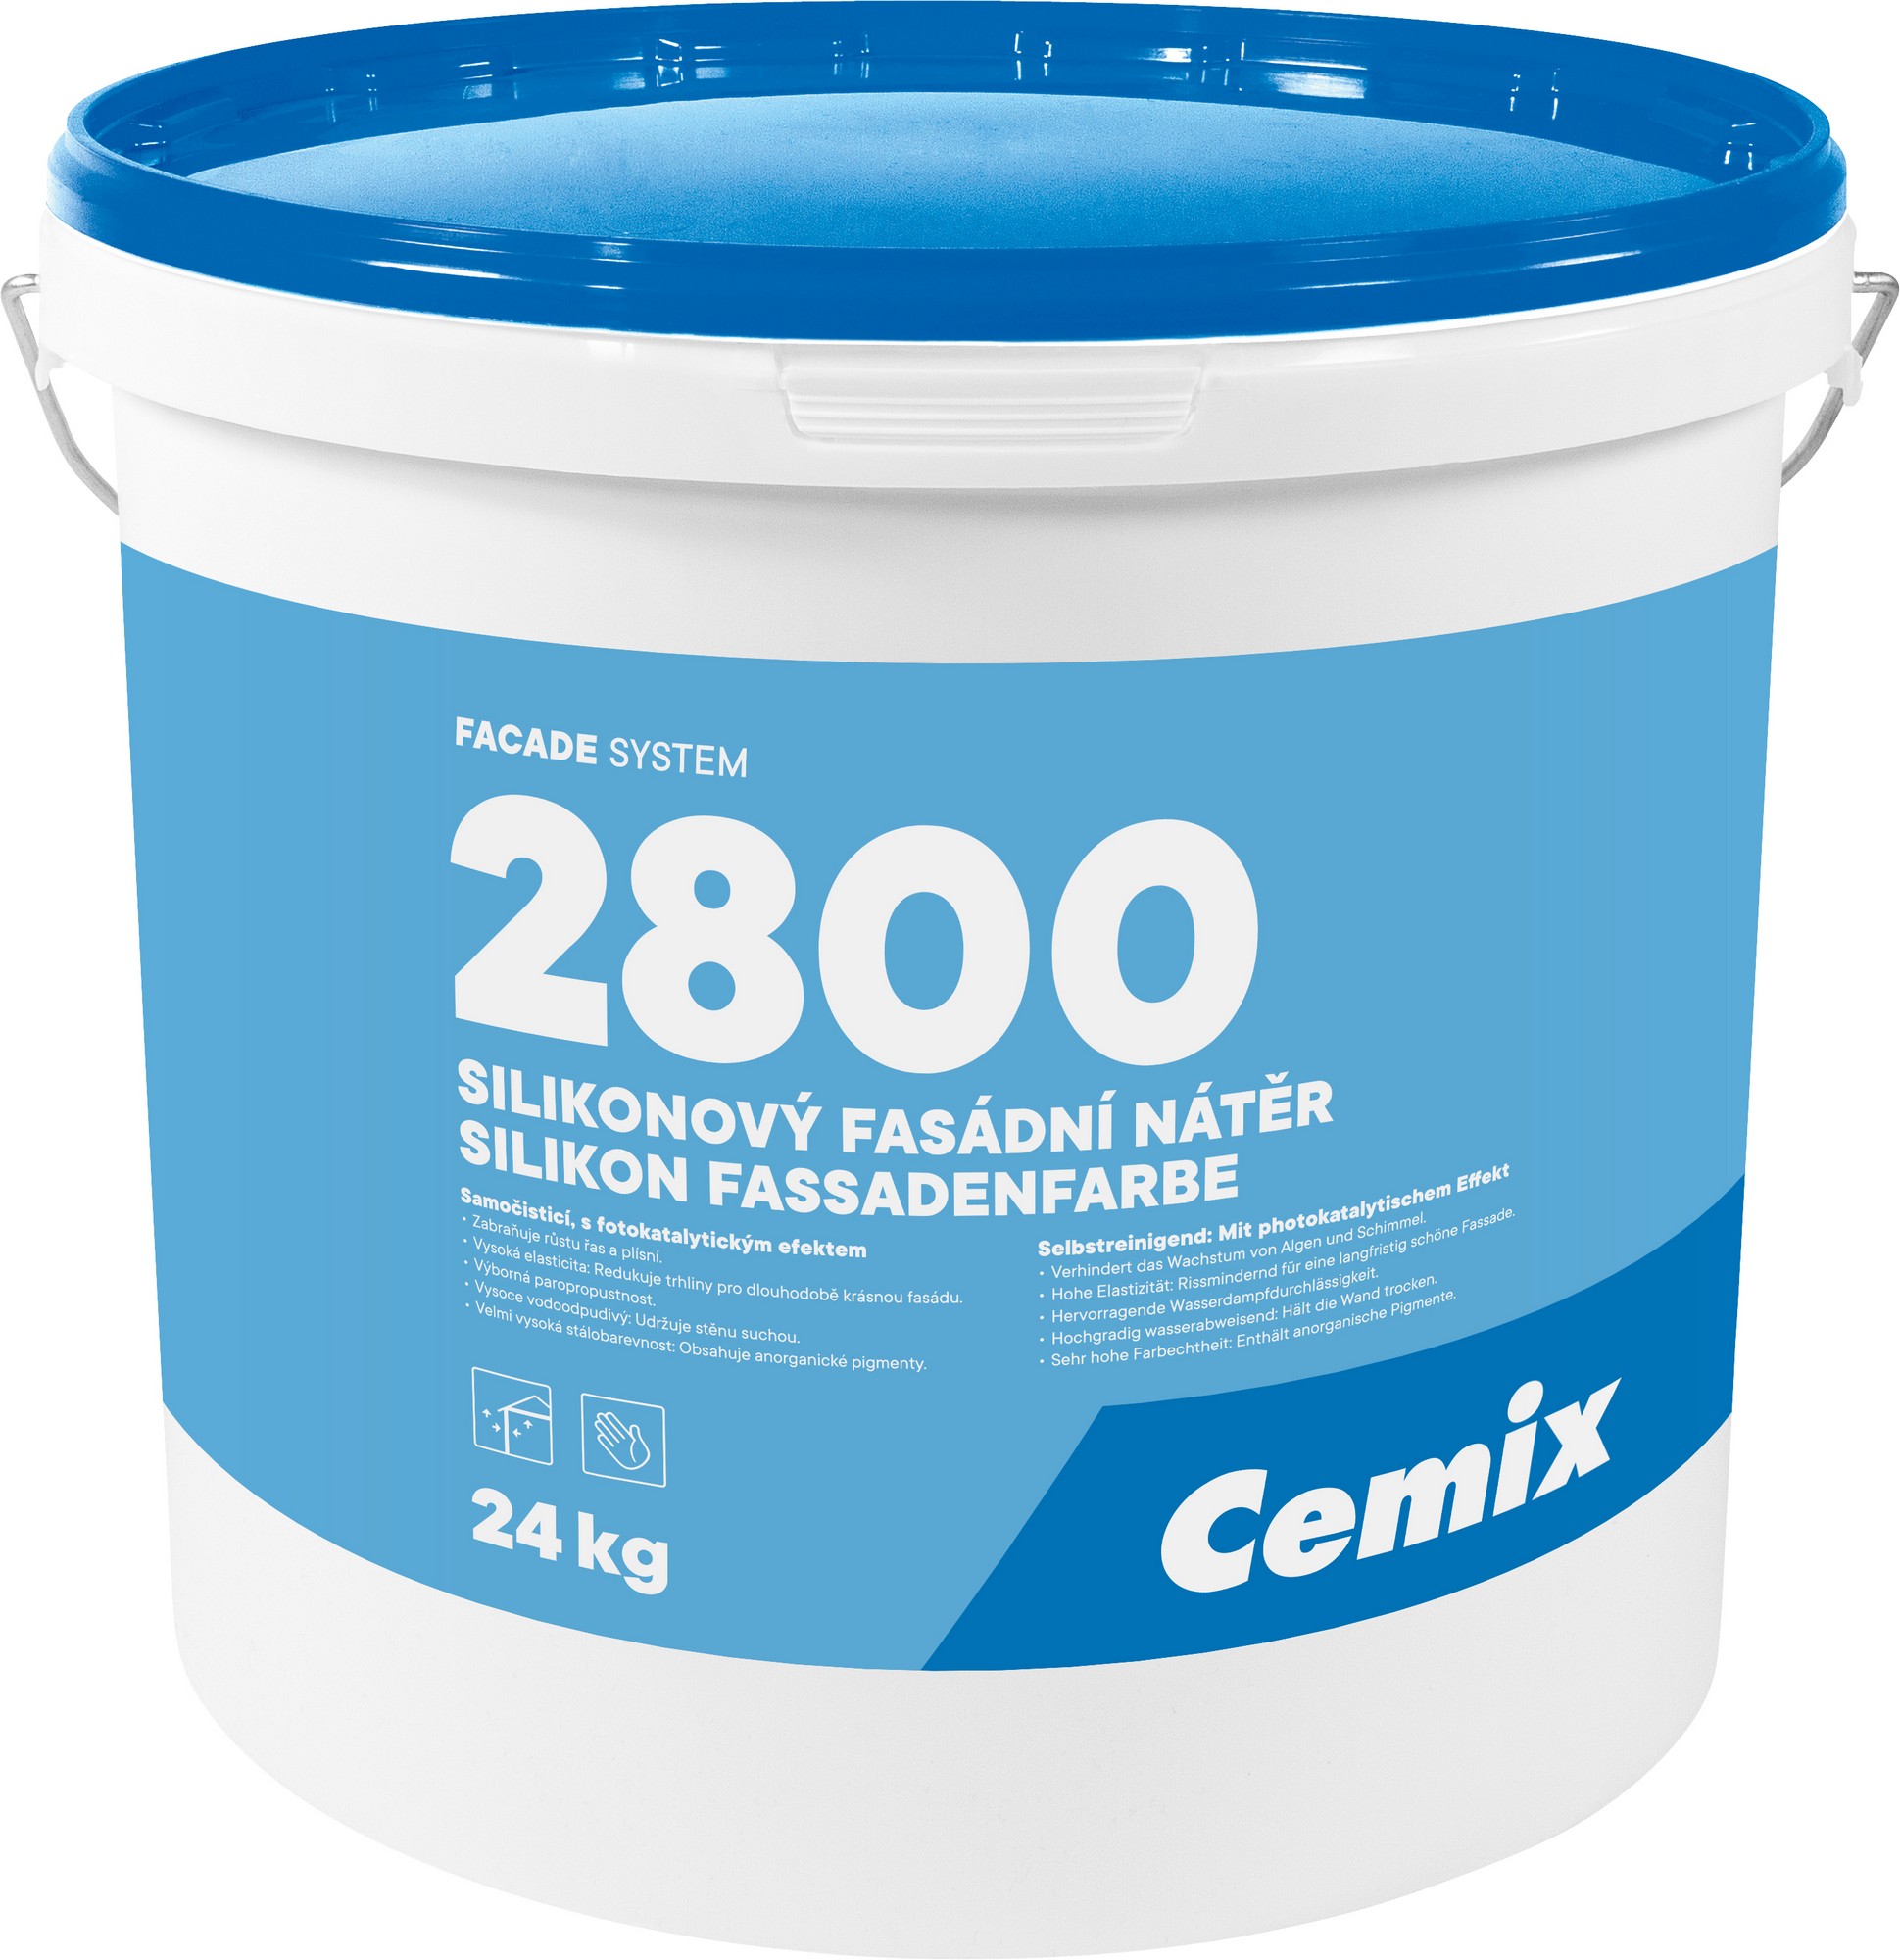 Nátěr fasádní silikonový Cemix 2800 bezpř., 24 kg